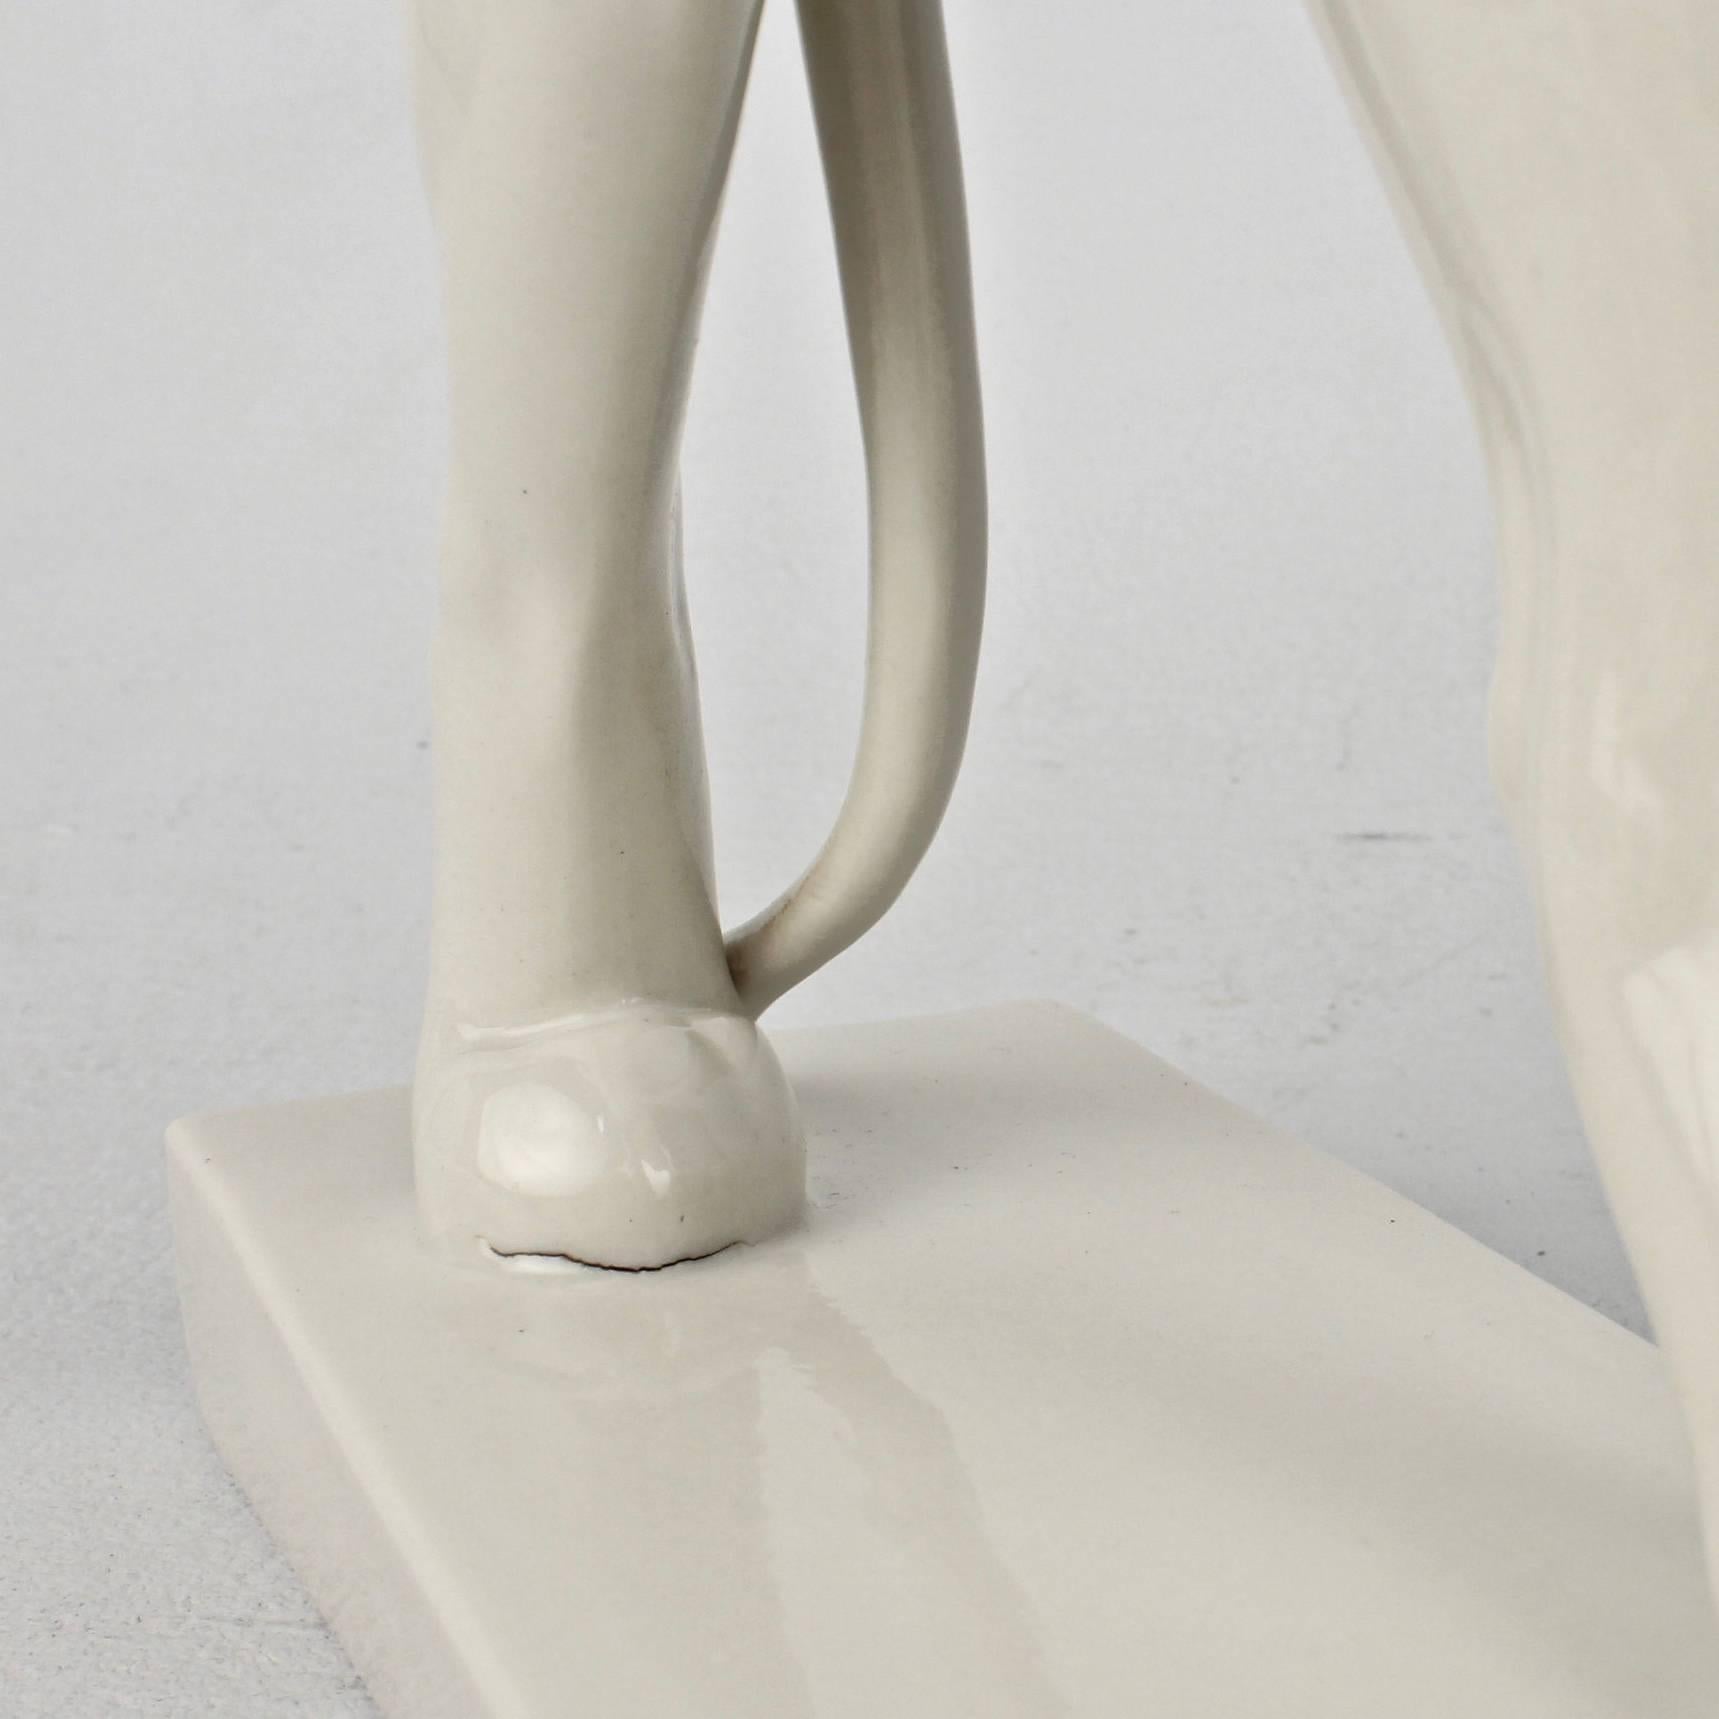 Jugendstil White Porcelain Lion Figurine by Gerhard Marcks for Schwarzburger 3